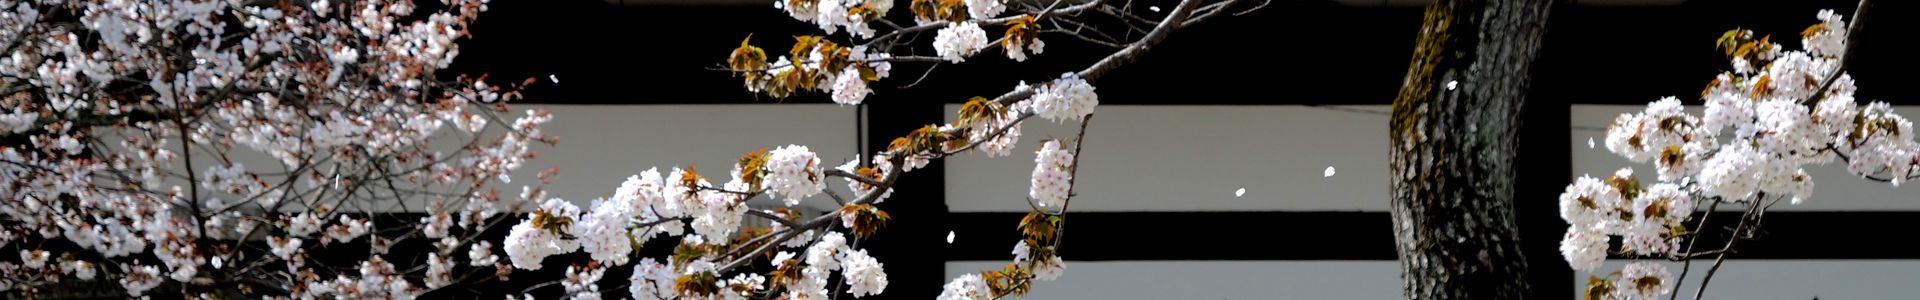 cerisiers-en-fleurs-au-temple-a-kyoto-c-gettyimages-joka2000-959053598-jpg.jpg